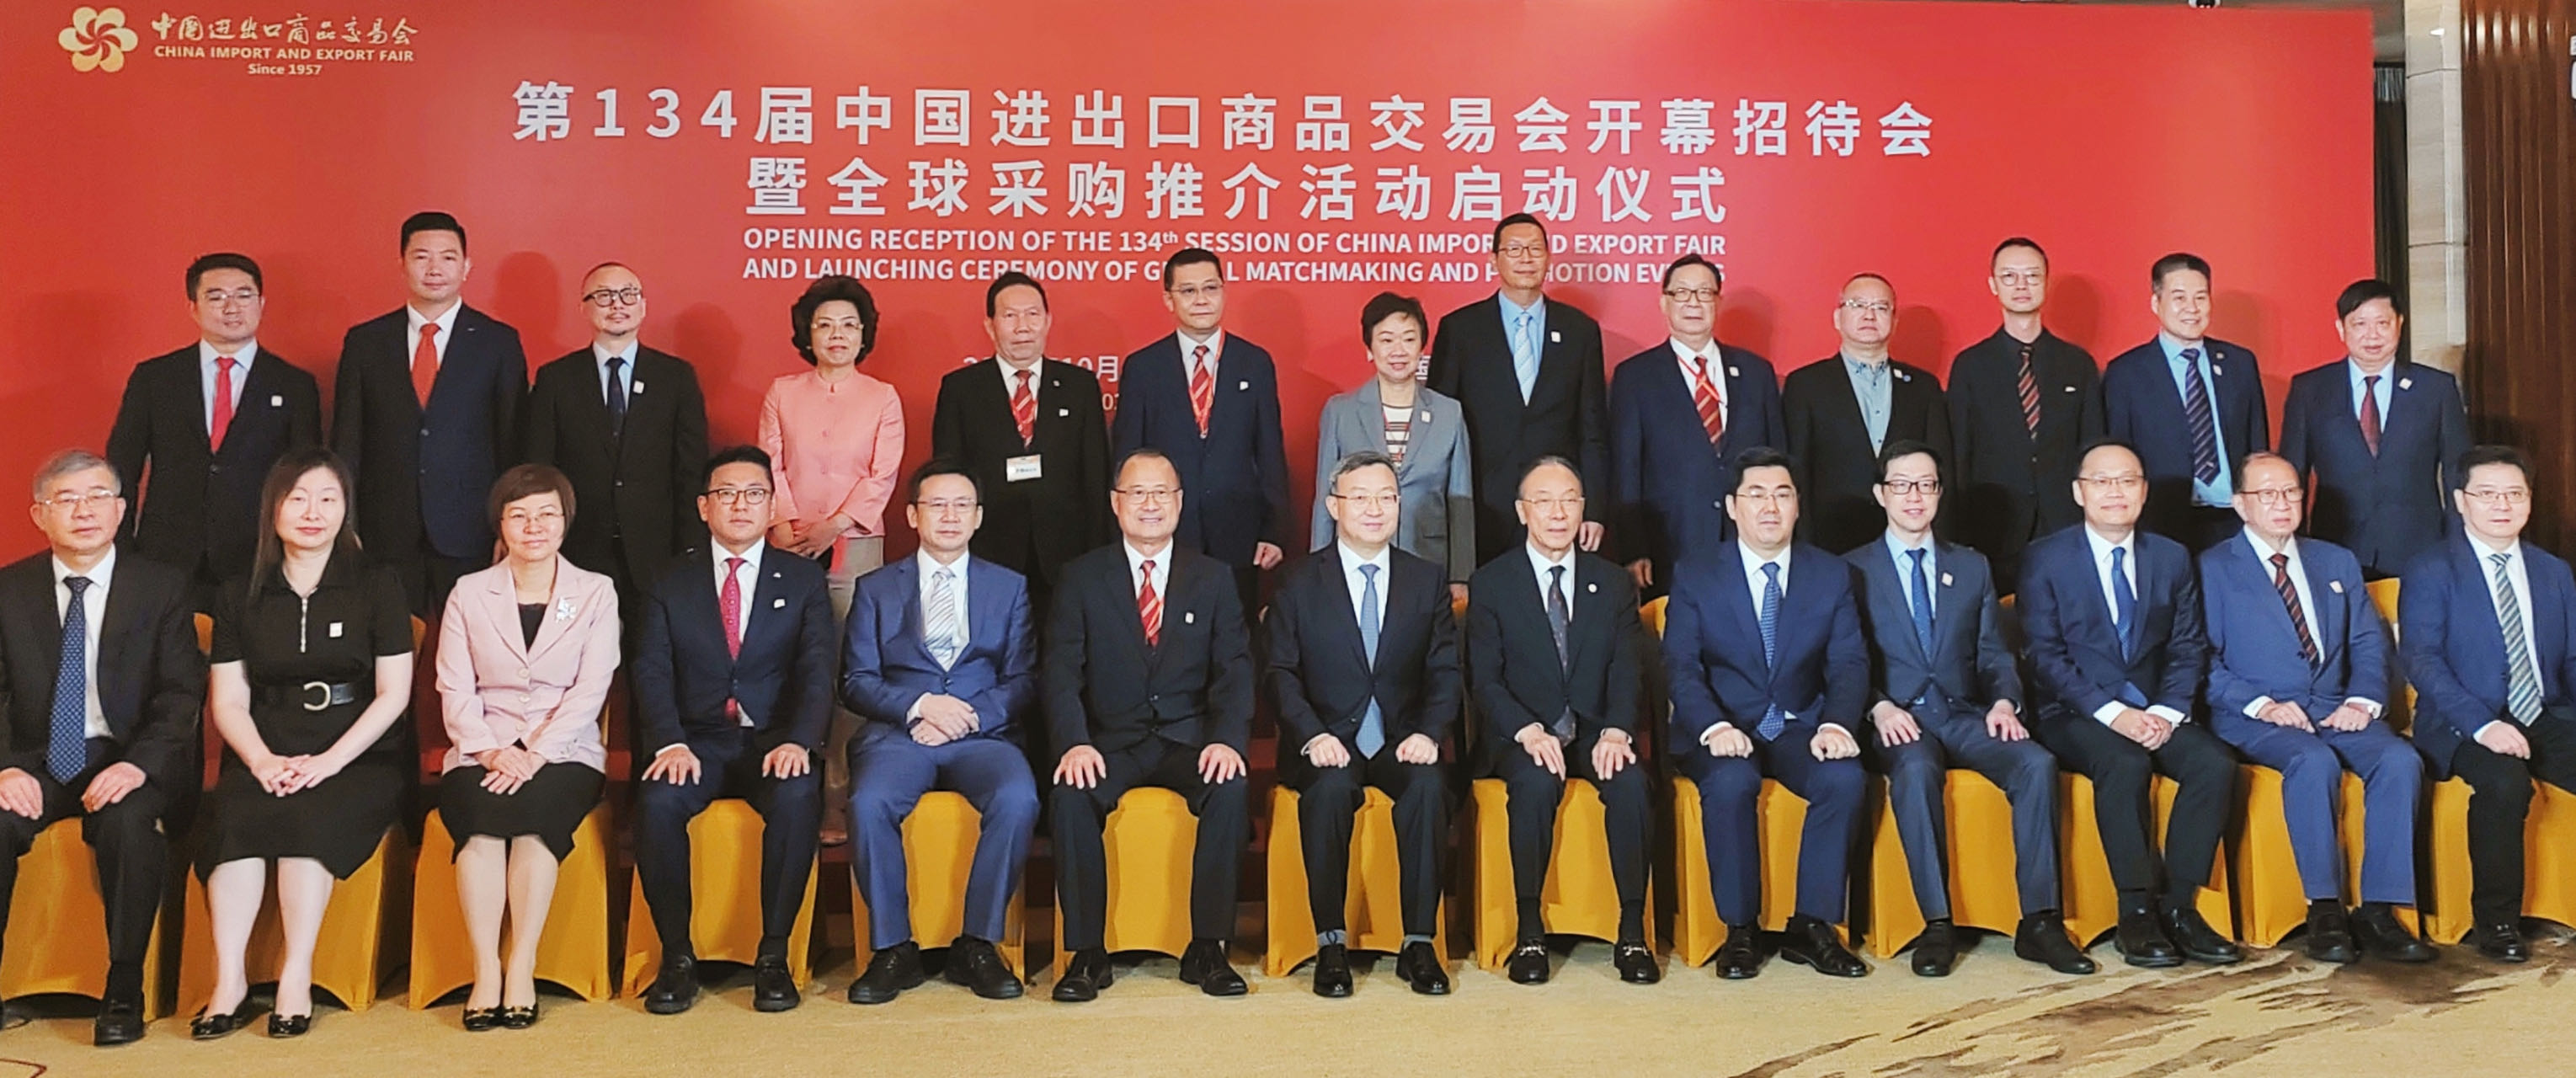 中總代表團出席第134屆廣交會開幕式